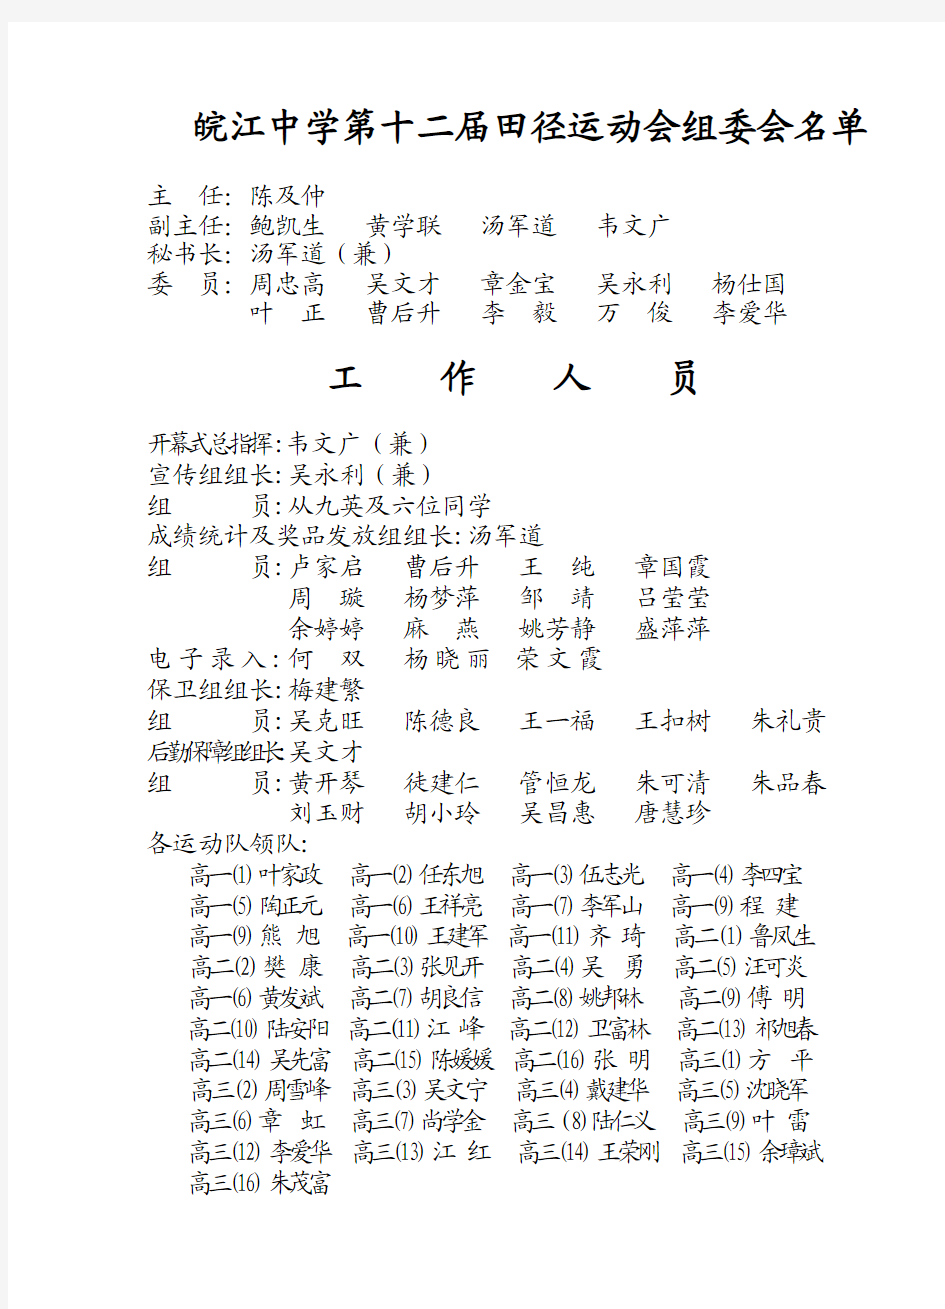 皖江中学第十二届田径运动会组委会名单